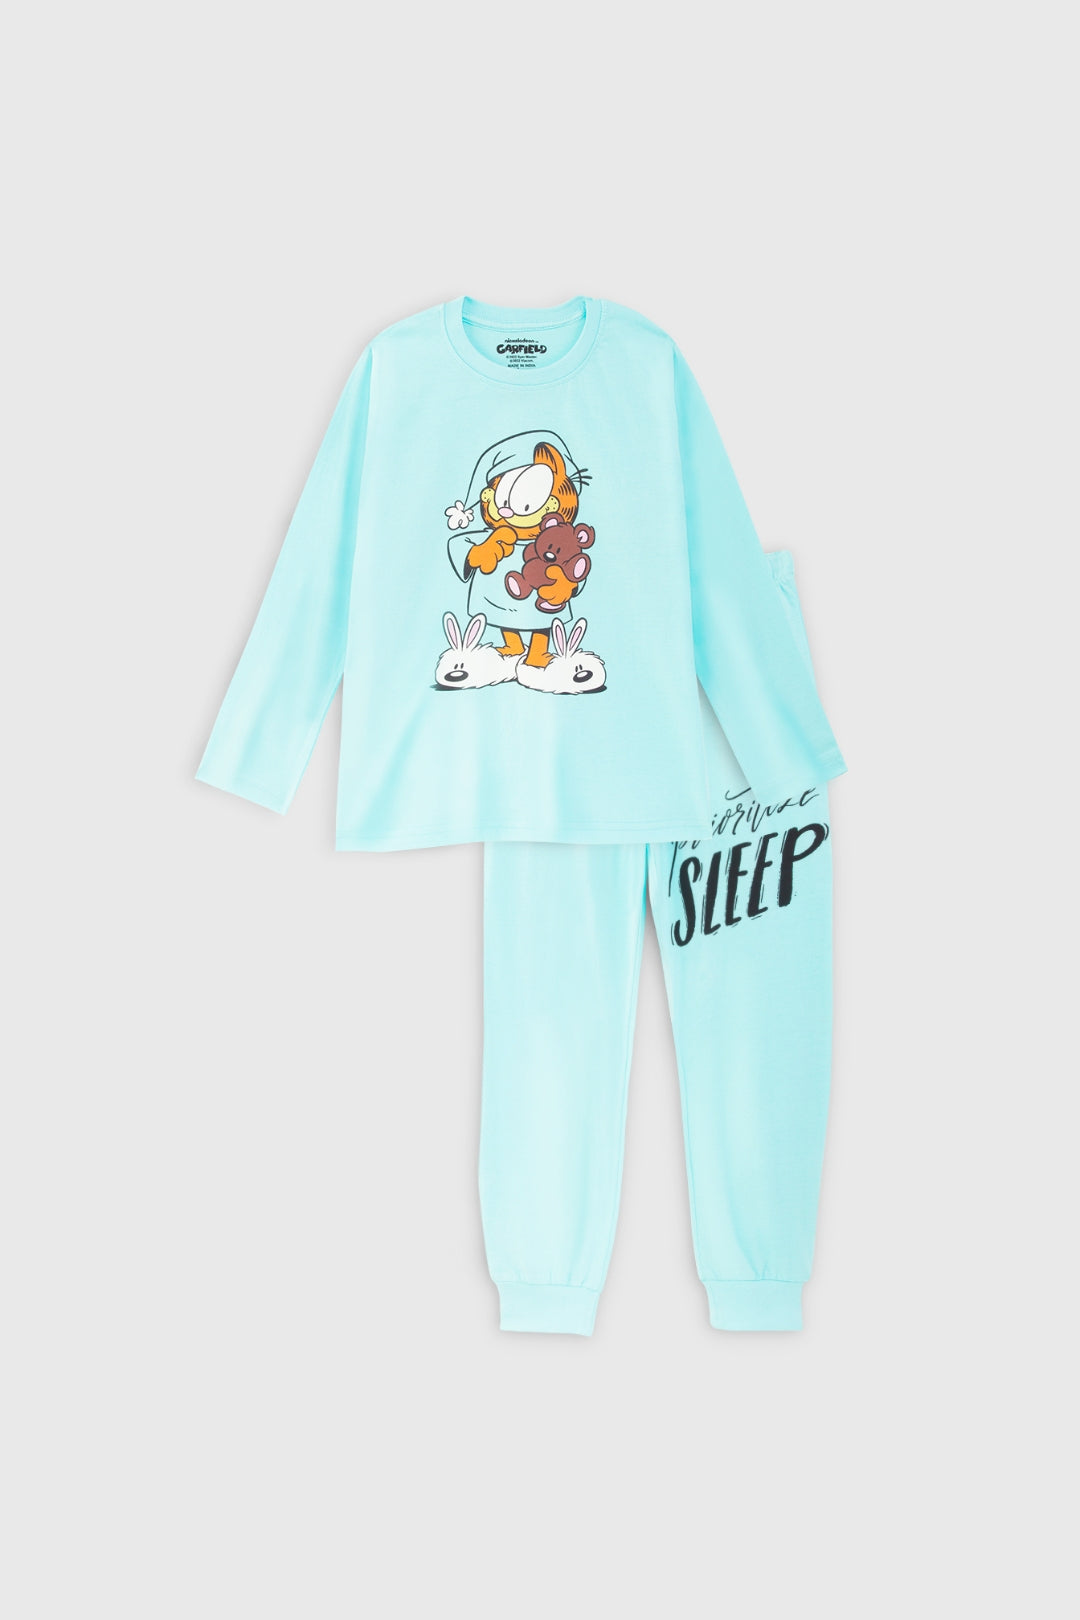 Garfield Sleep Pajama Set